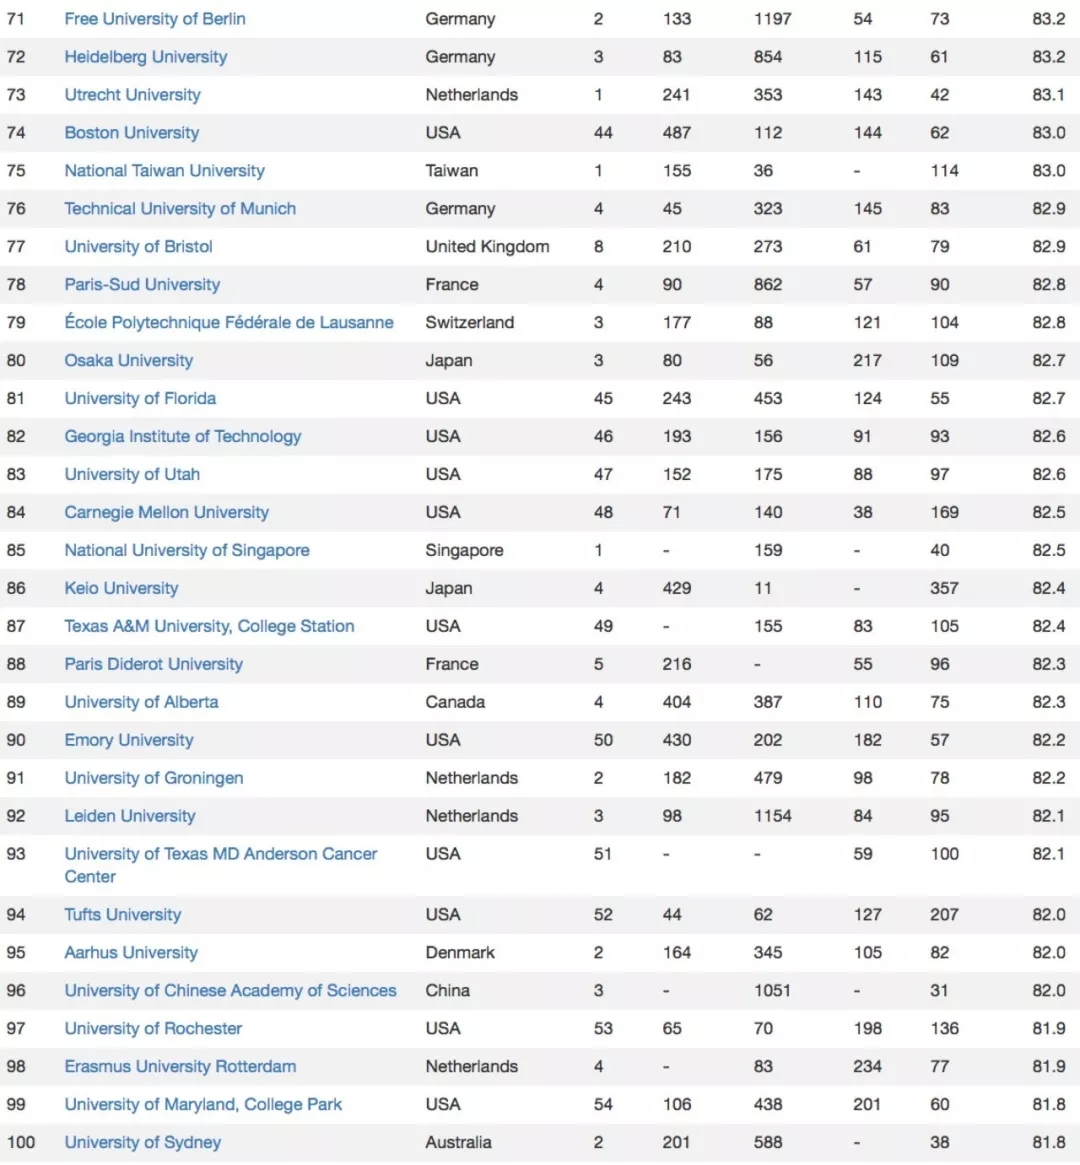 2019年全球大学排行_2019年世界十大权威大学排名报告发布,中国891所高校